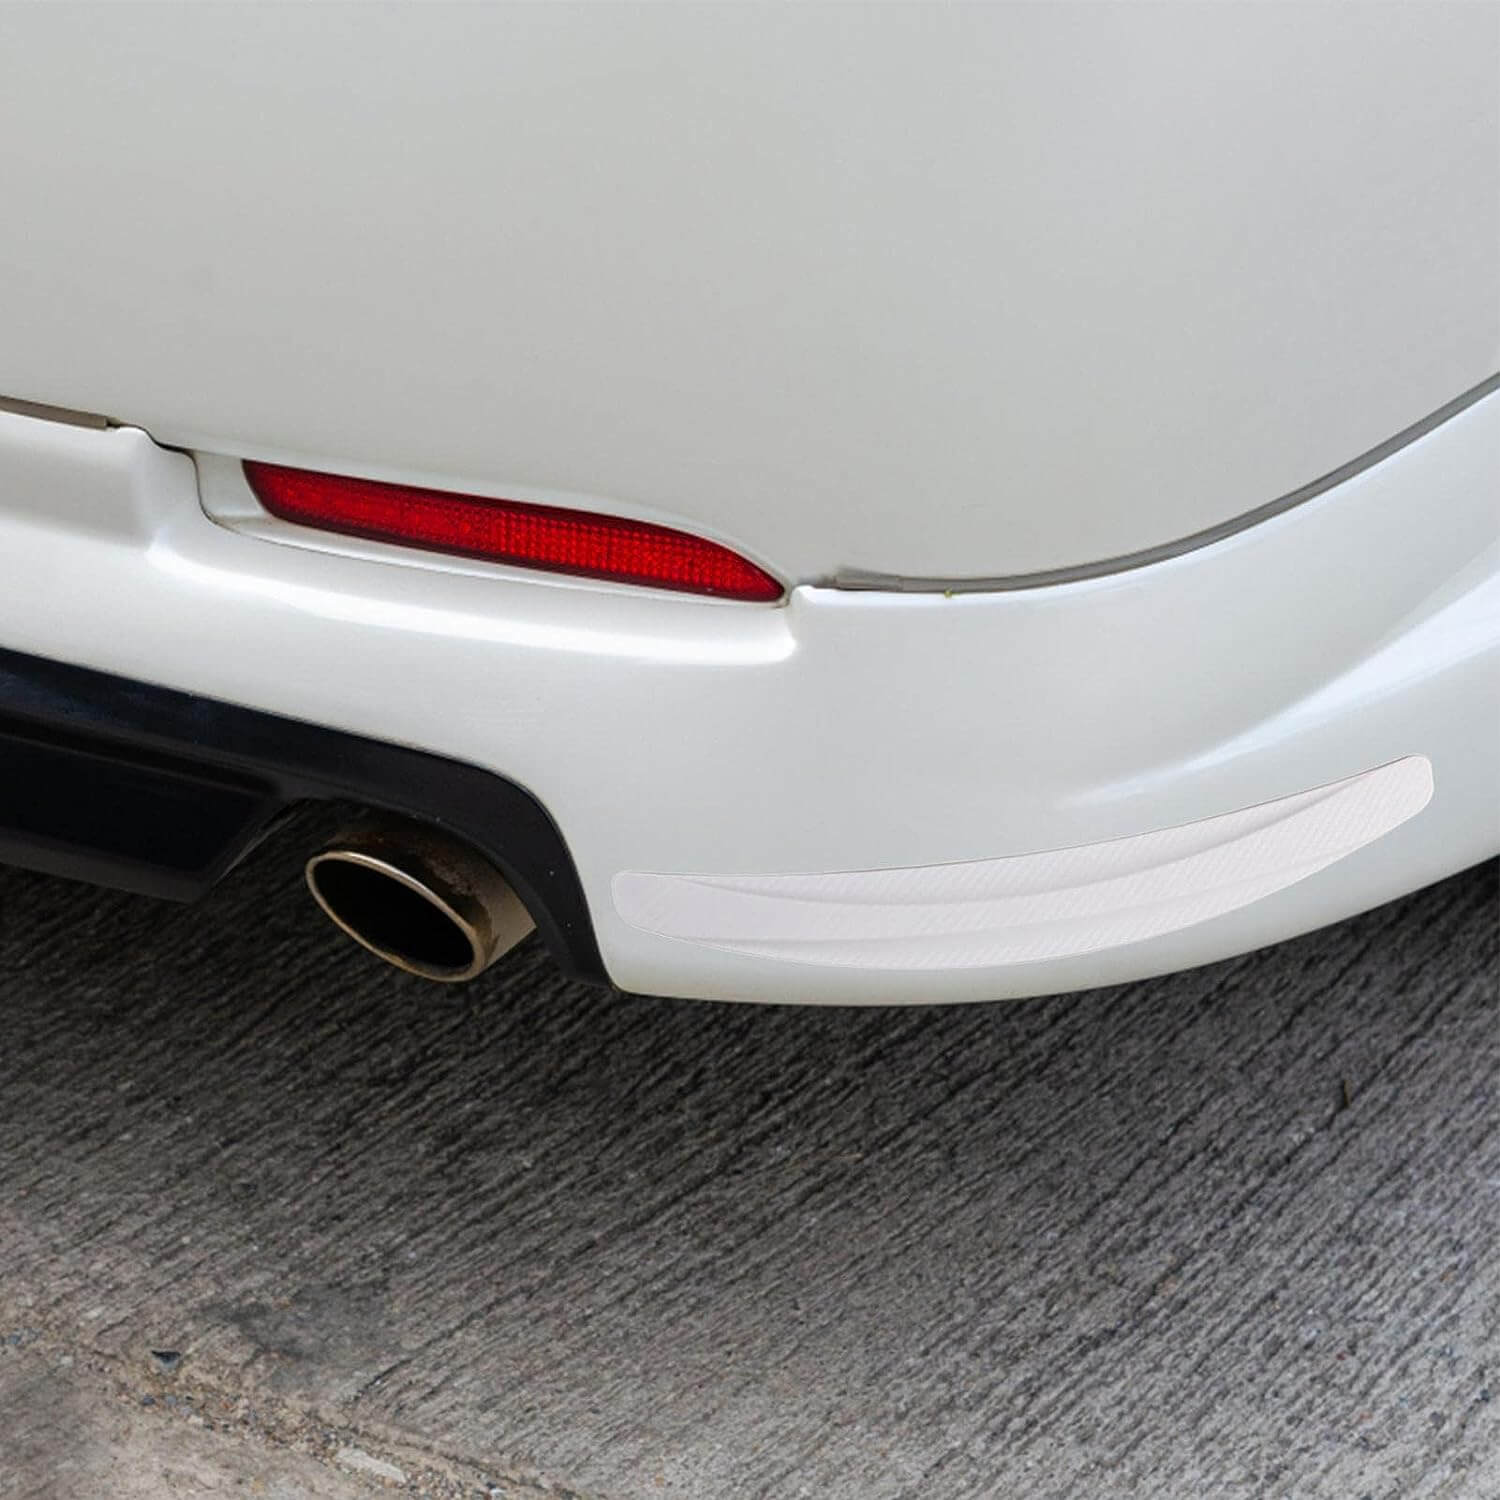  BoYeeBo Protection universelle pour pare-chocs avant de voiture  - Autocollant - 2,5 m (fibre de carbone - noir) - 250 x 5,5 cm (L x l)